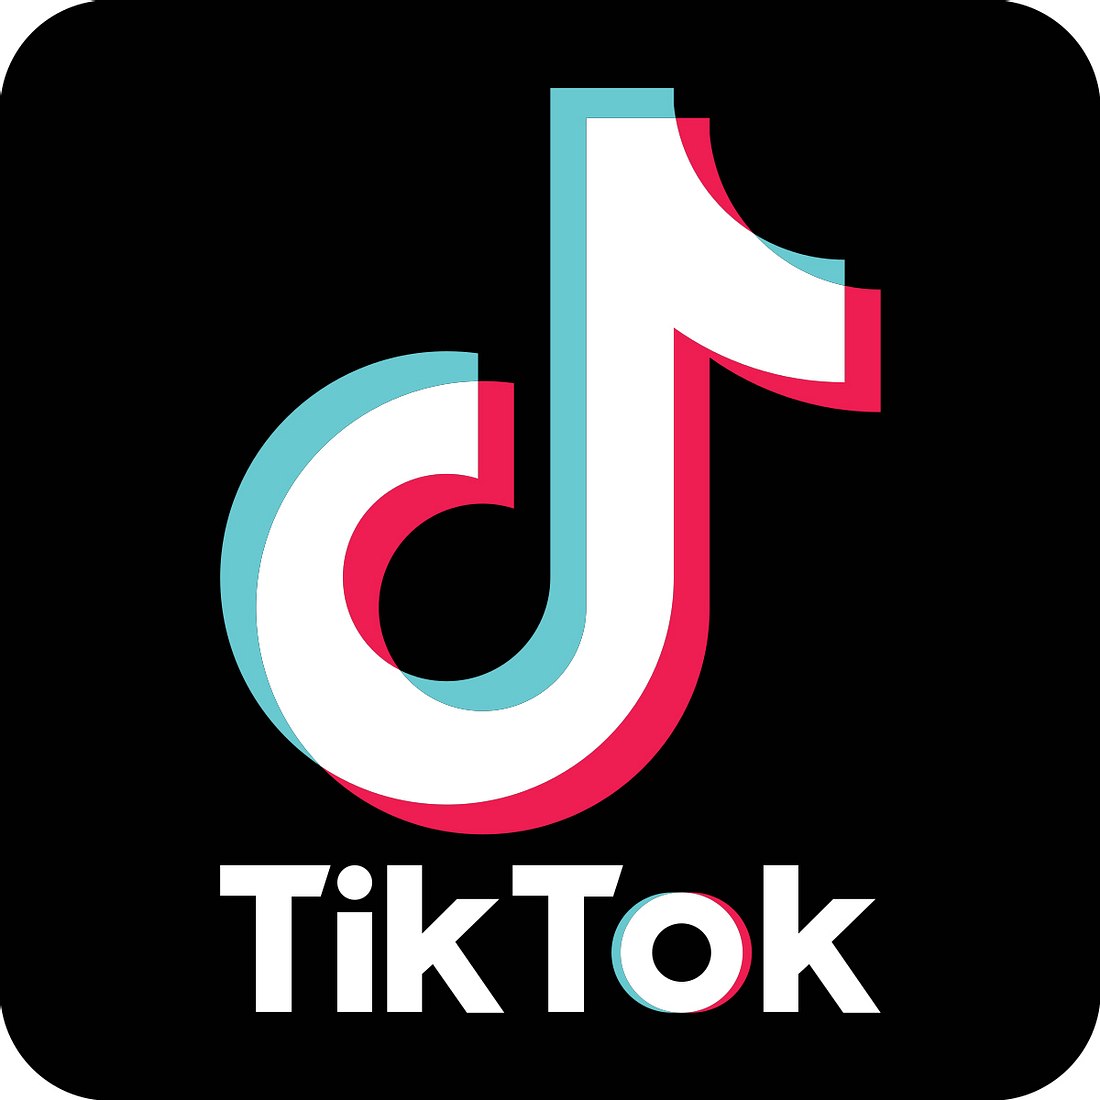 TikTok zählt zu den beliebtsten Apps weltweit, doch die Kritik wird immer lauter.